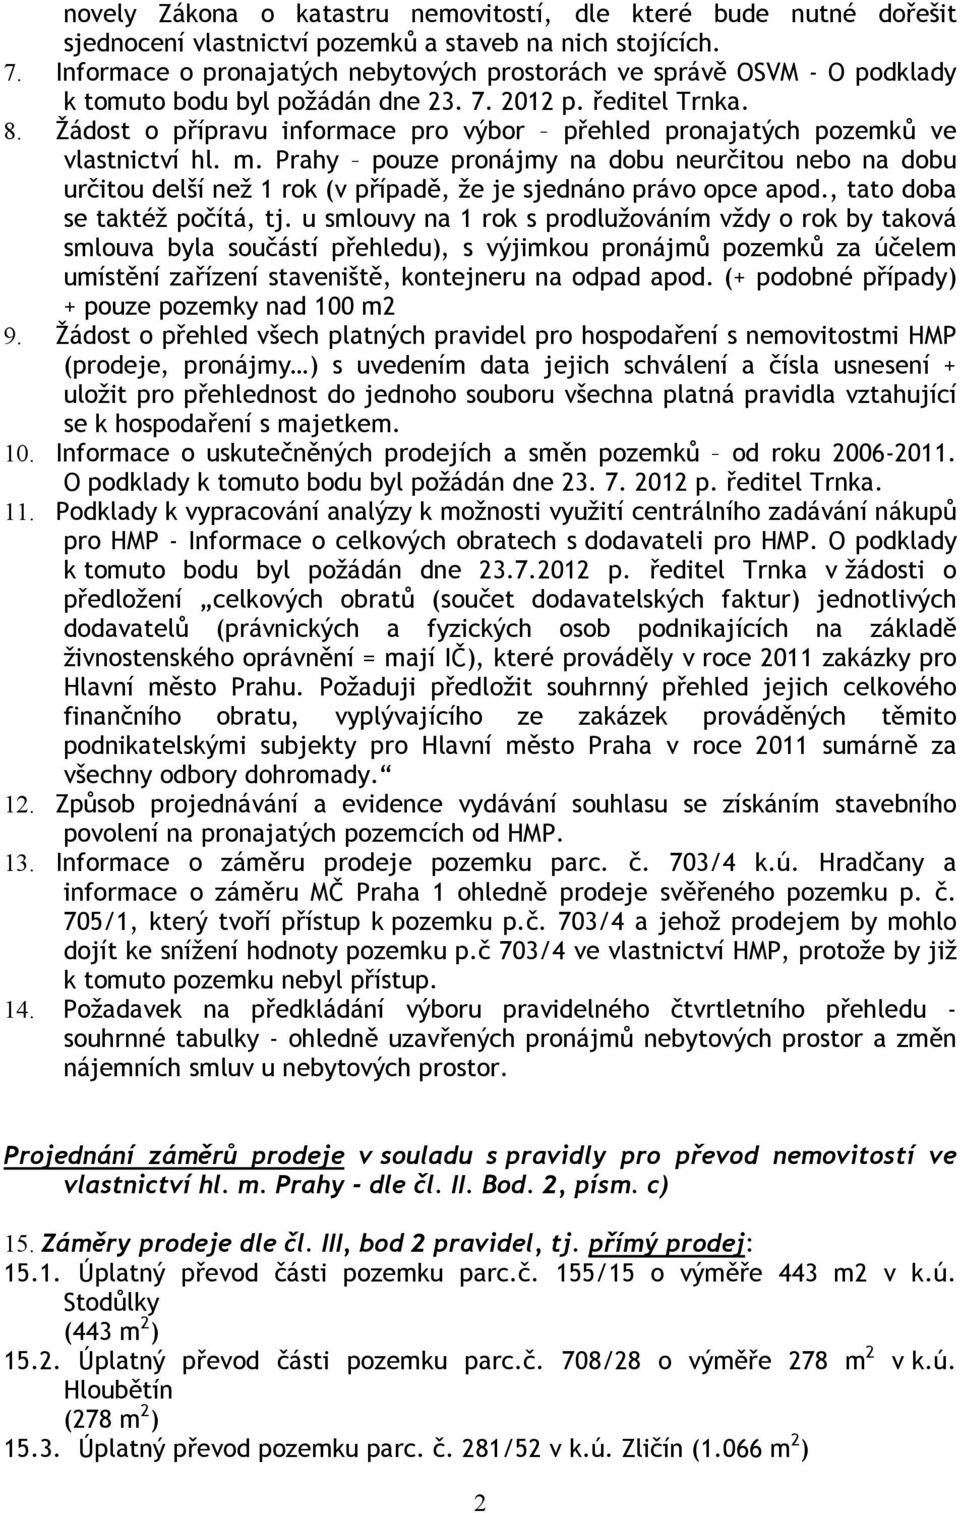 Žádost o přípravu informace pro výbor přehled pronajatých pozemků ve vlastnictví hl. m.